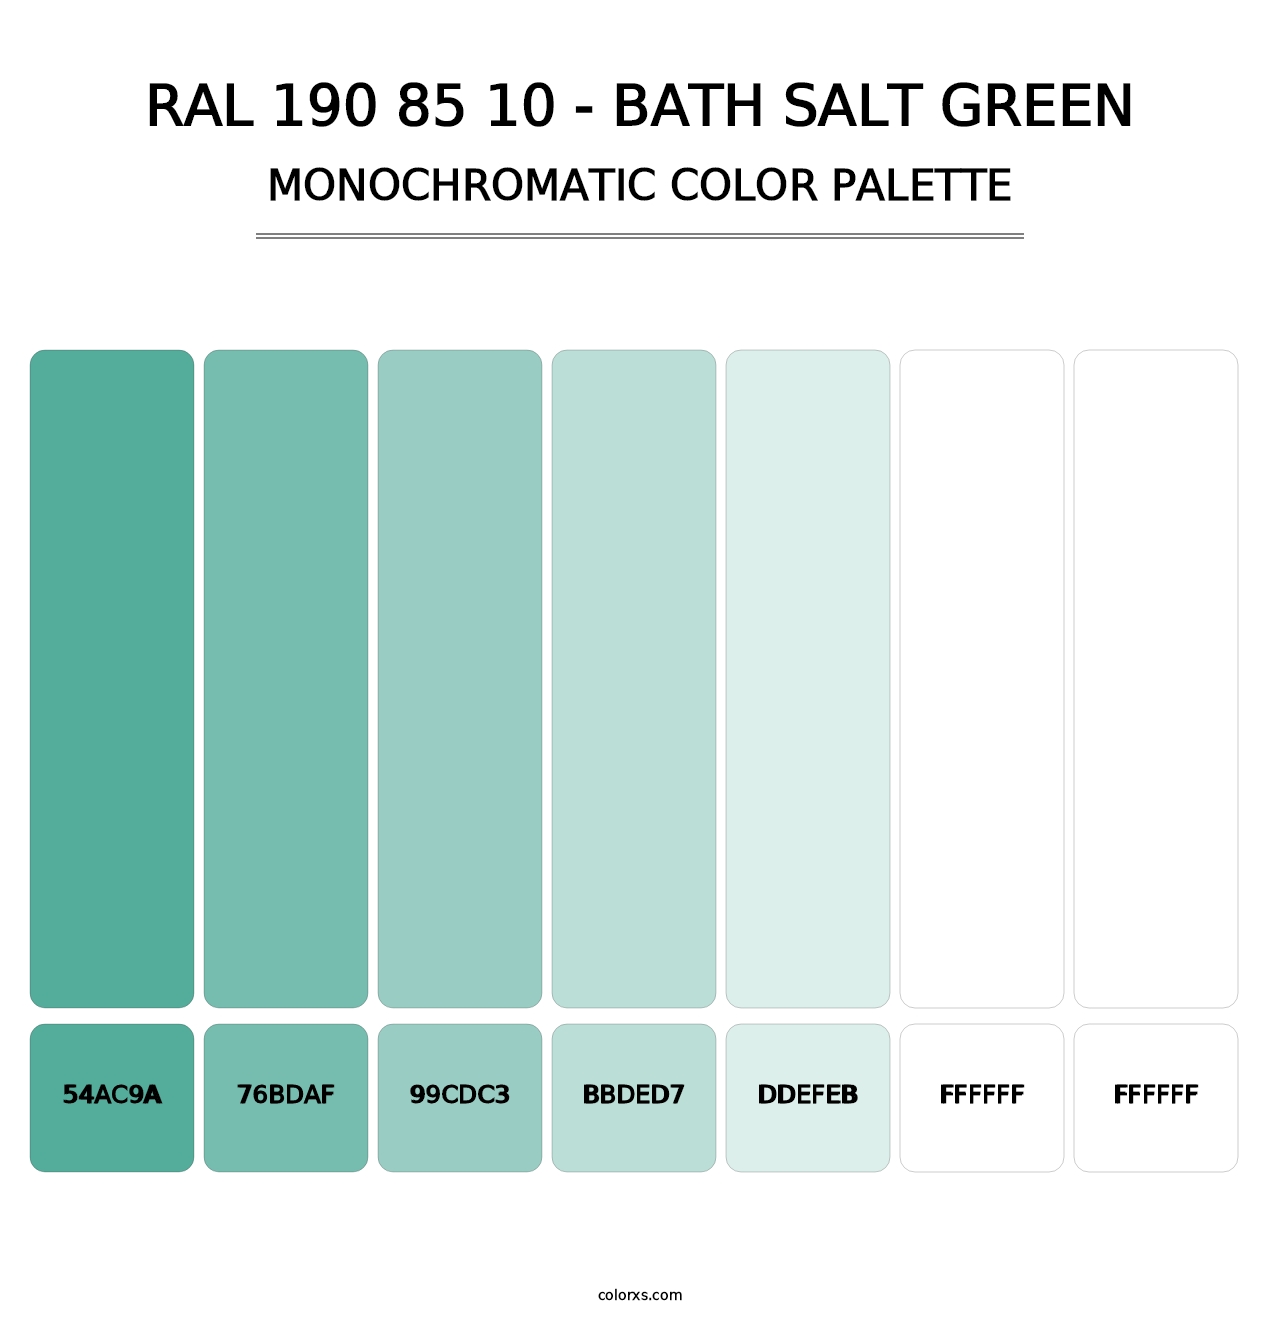 RAL 190 85 10 - Bath Salt Green - Monochromatic Color Palette